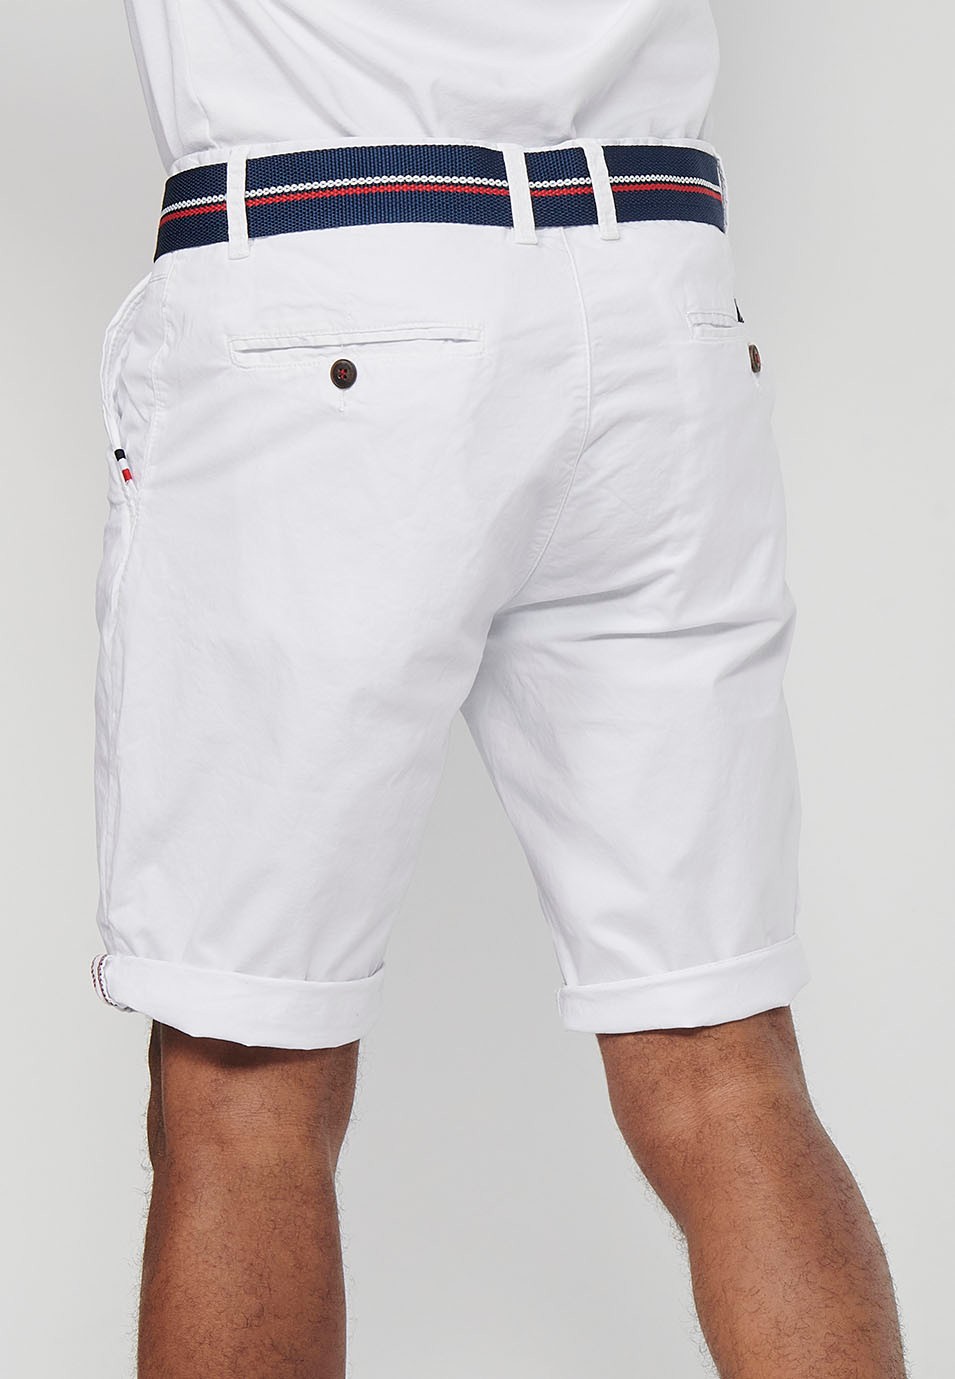 Pantalons curts acabats en volta amb Tancament davanter amb cremallera i botó i cinturó de Color Blanc per a Home 8